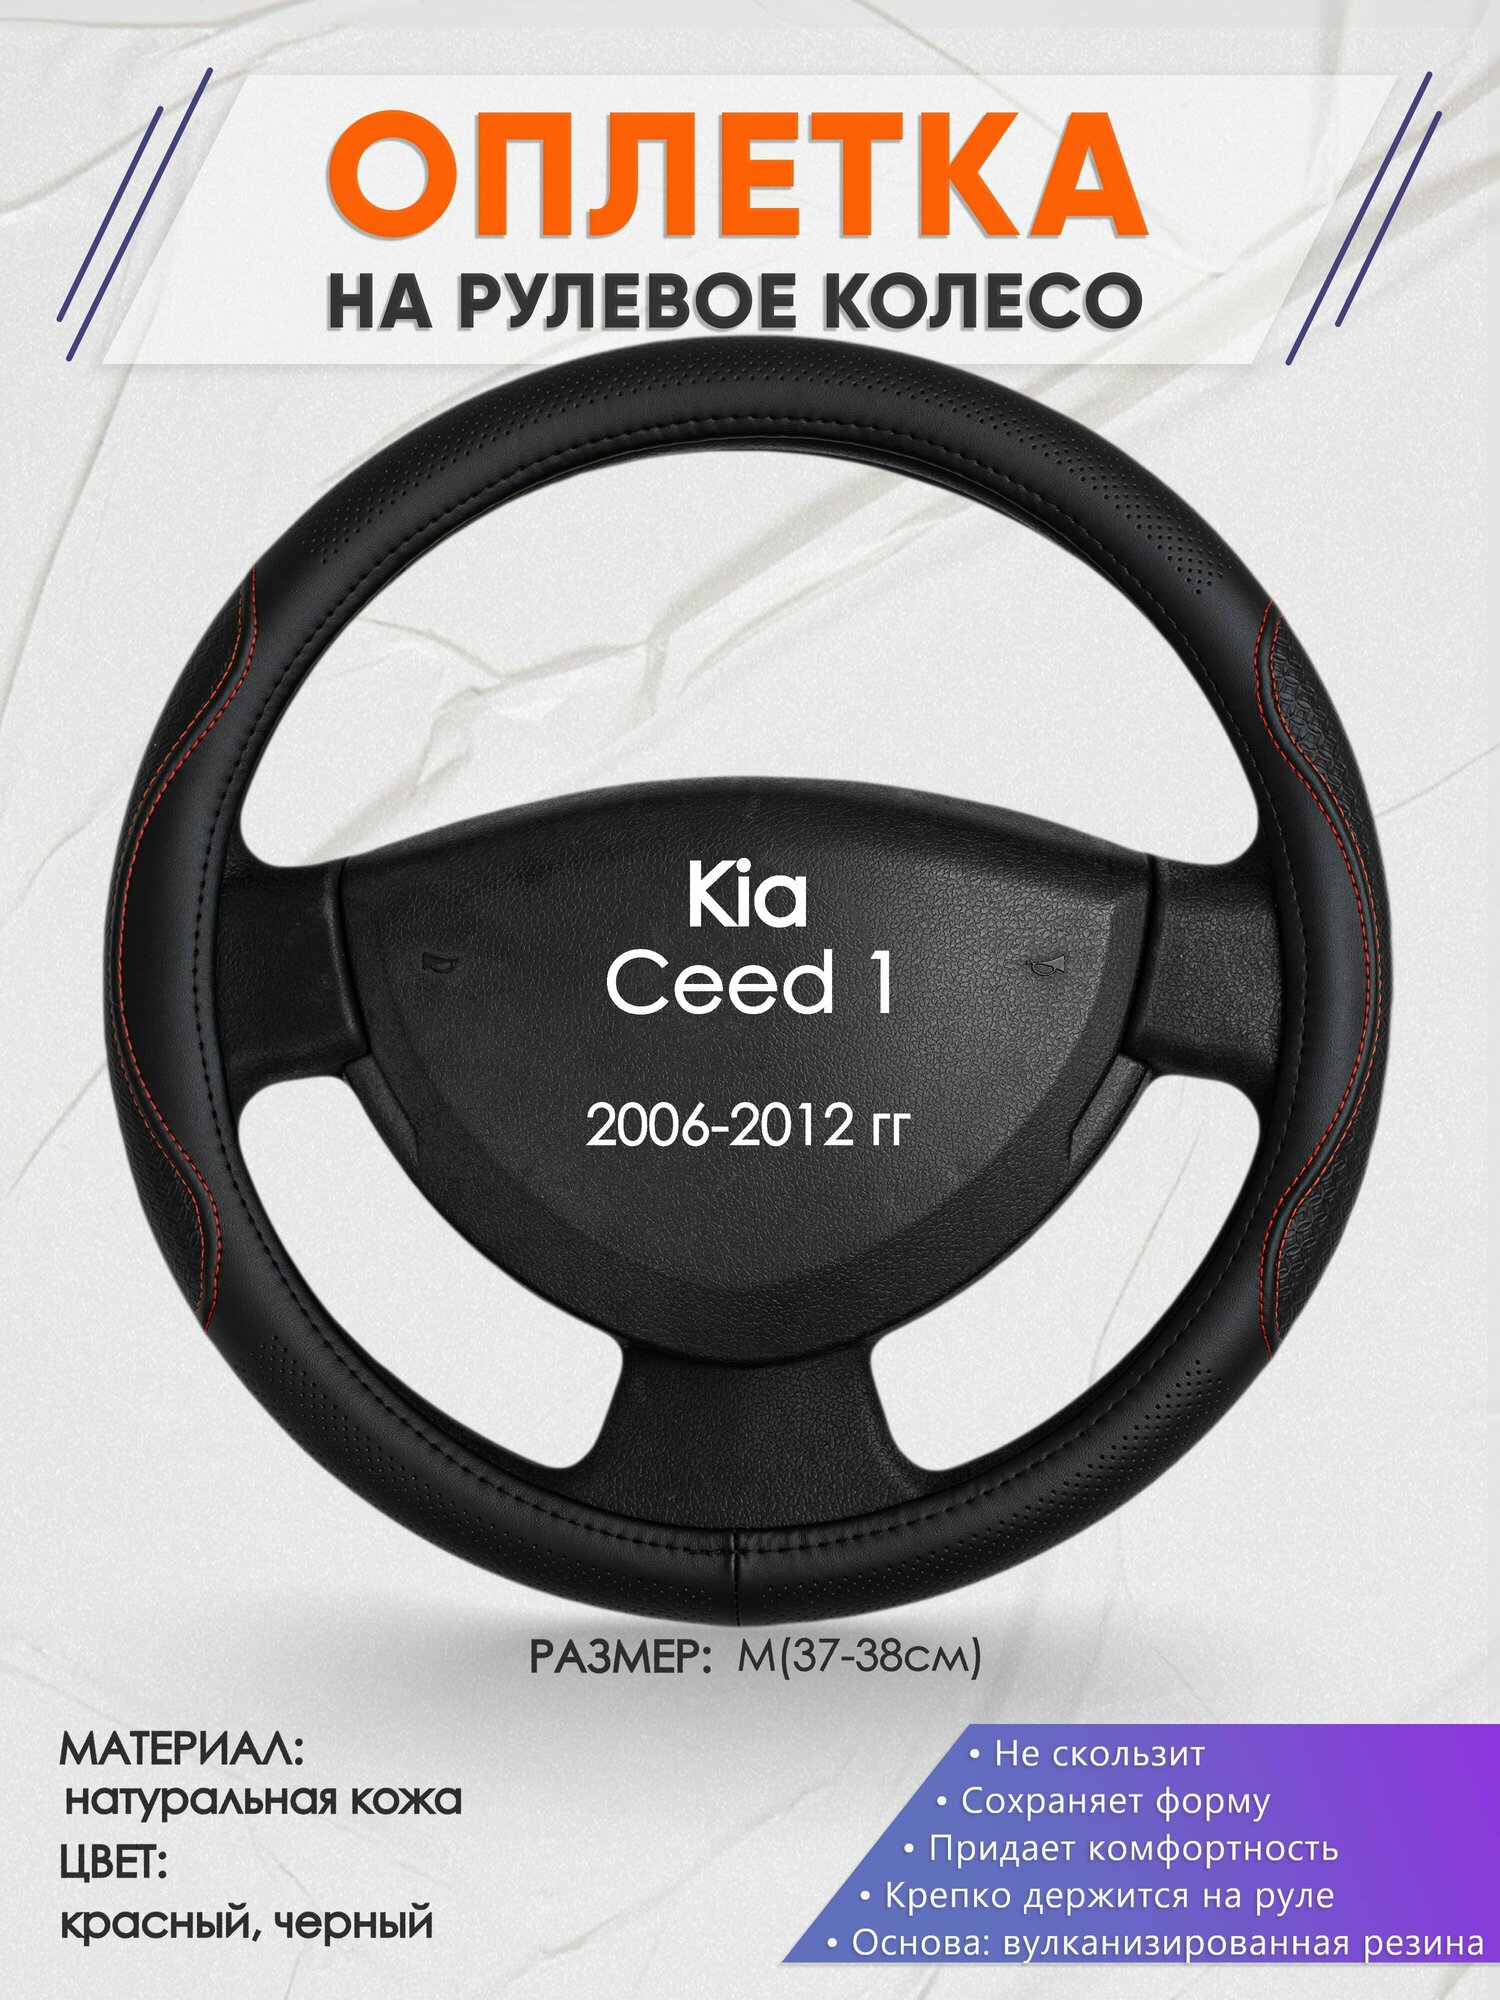 Оплетка на руль для Kia Ceed 1(Киа Сид 1 поколения) 2006-2012, M(37-38см), Натуральная кожа 27